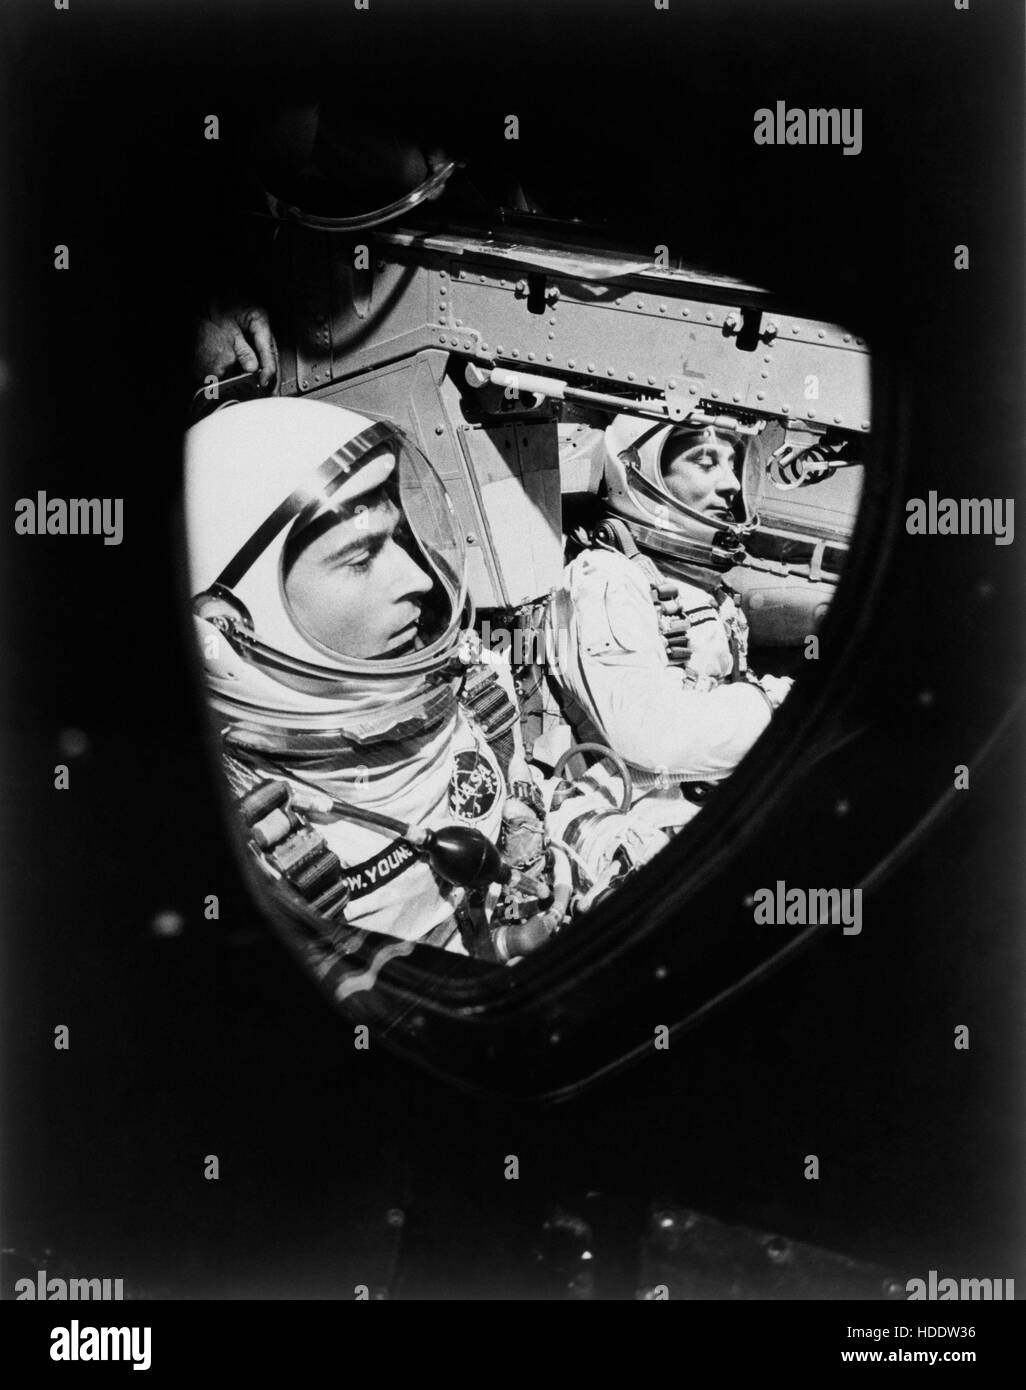 La NASA Gemini-Titan 3 primo equipaggio astronauti John Young (sinistra) e Gus Grissom nel Gemini-Titan 3 navicella spaziale prima di lanciare alla Cape Canaveral Air Force Station Launch Complex 23 marzo 1965 a Cape Canaveral, in Florida. Foto Stock